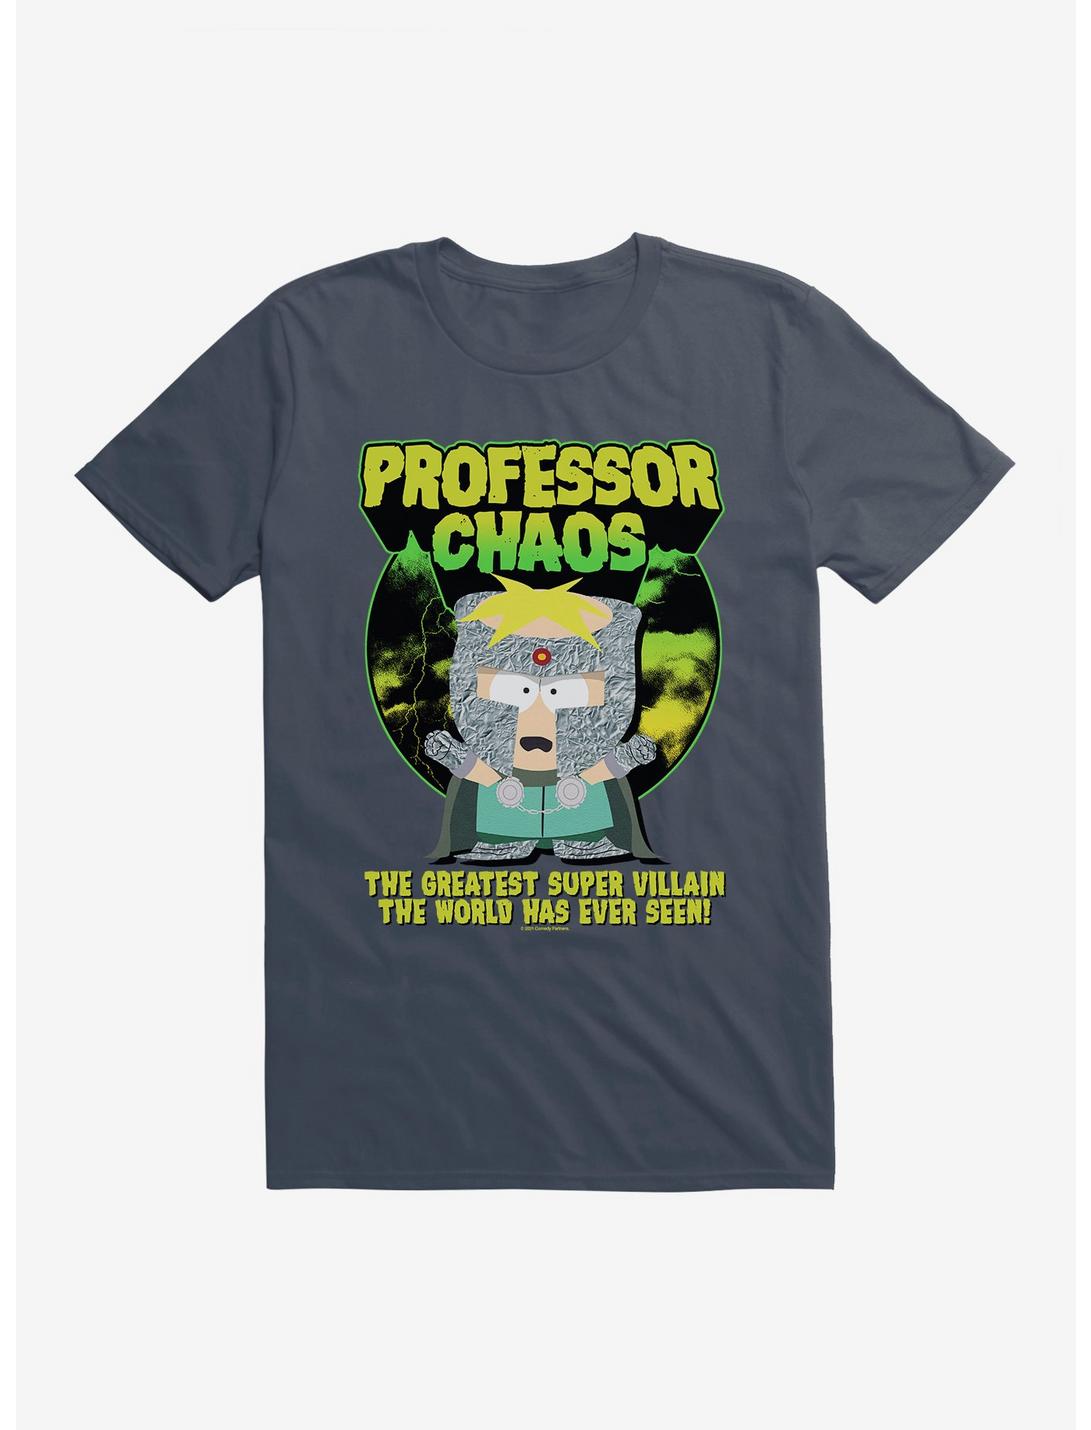 South Park Professor Chaos T-Shirt, , hi-res